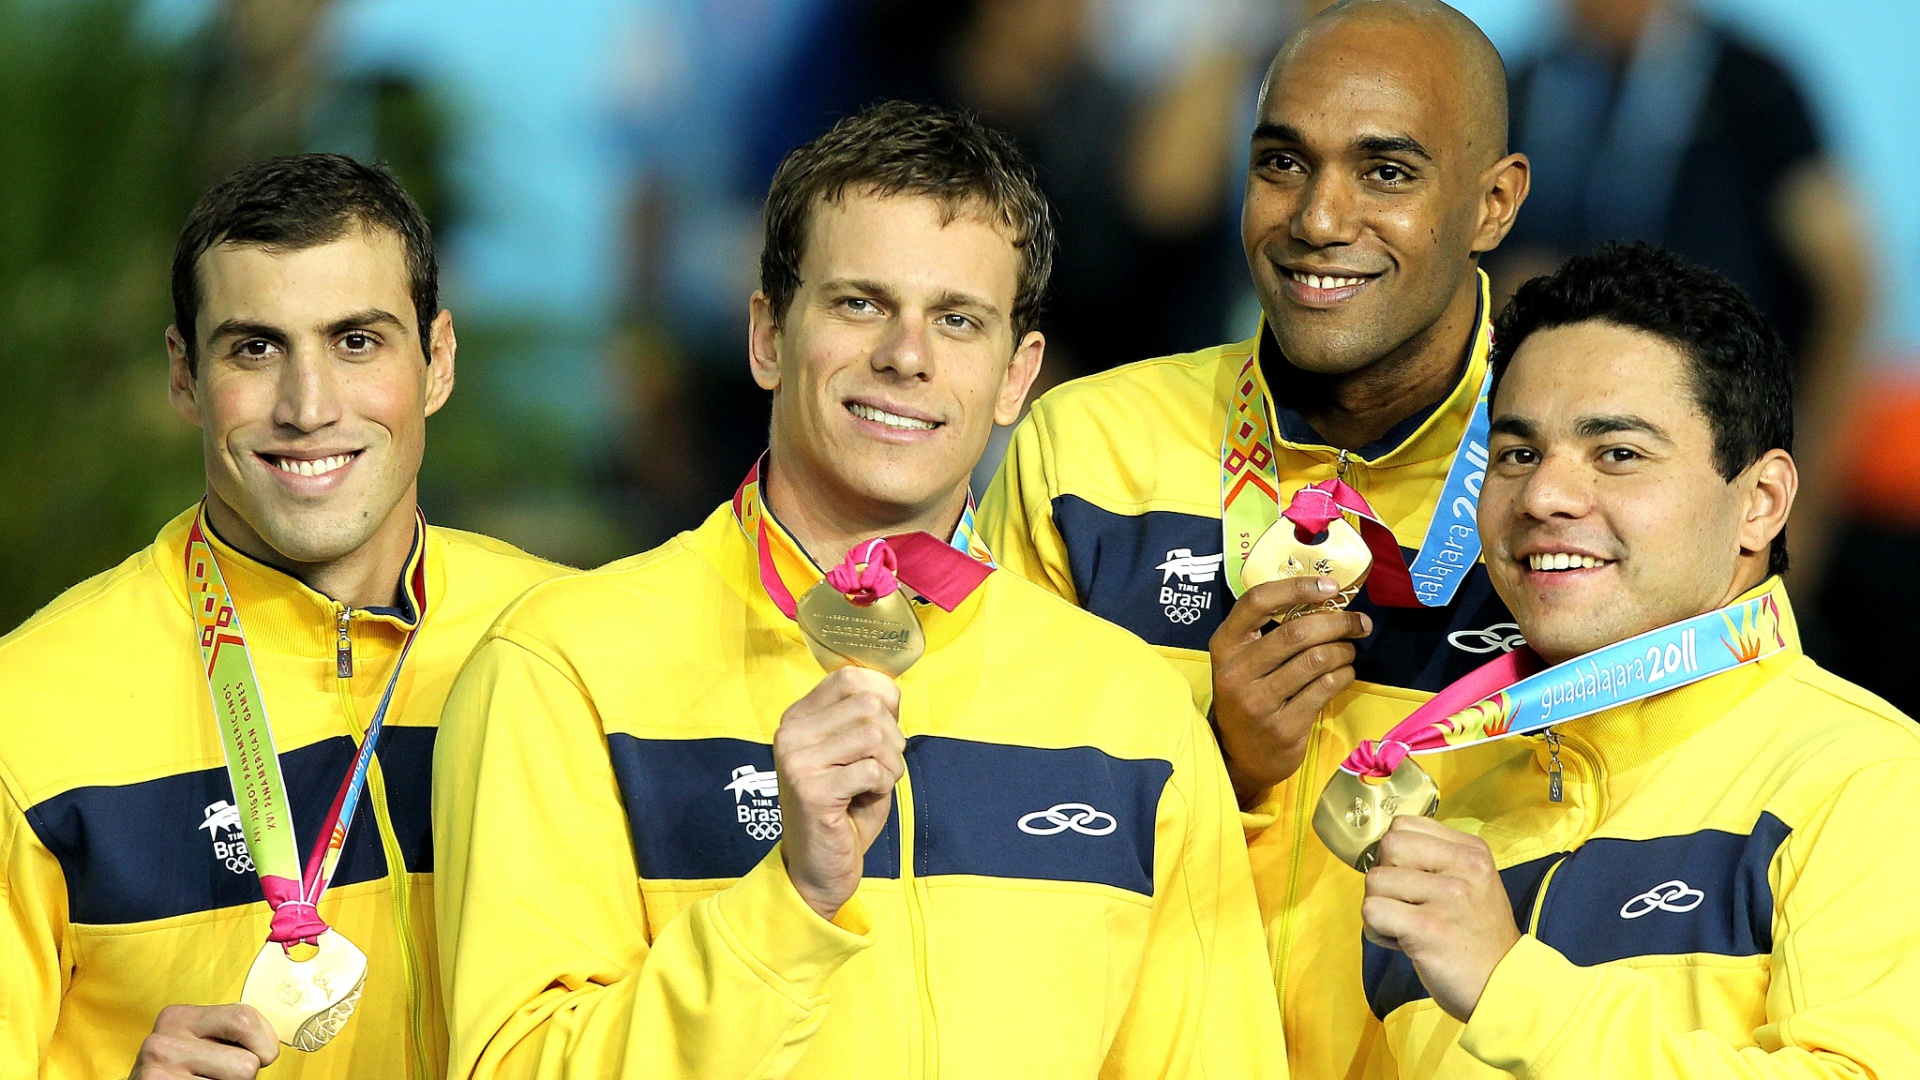 Guilherme Guido, Cesar, Cielo, Gabriel Mangabeira e Felipe França mostram o ouro do revezamento 4x100m medley, fechando as provas nas piscinas com mais um título do Brasil, o quarto em quatro provas de Cielo (21/10/2011)